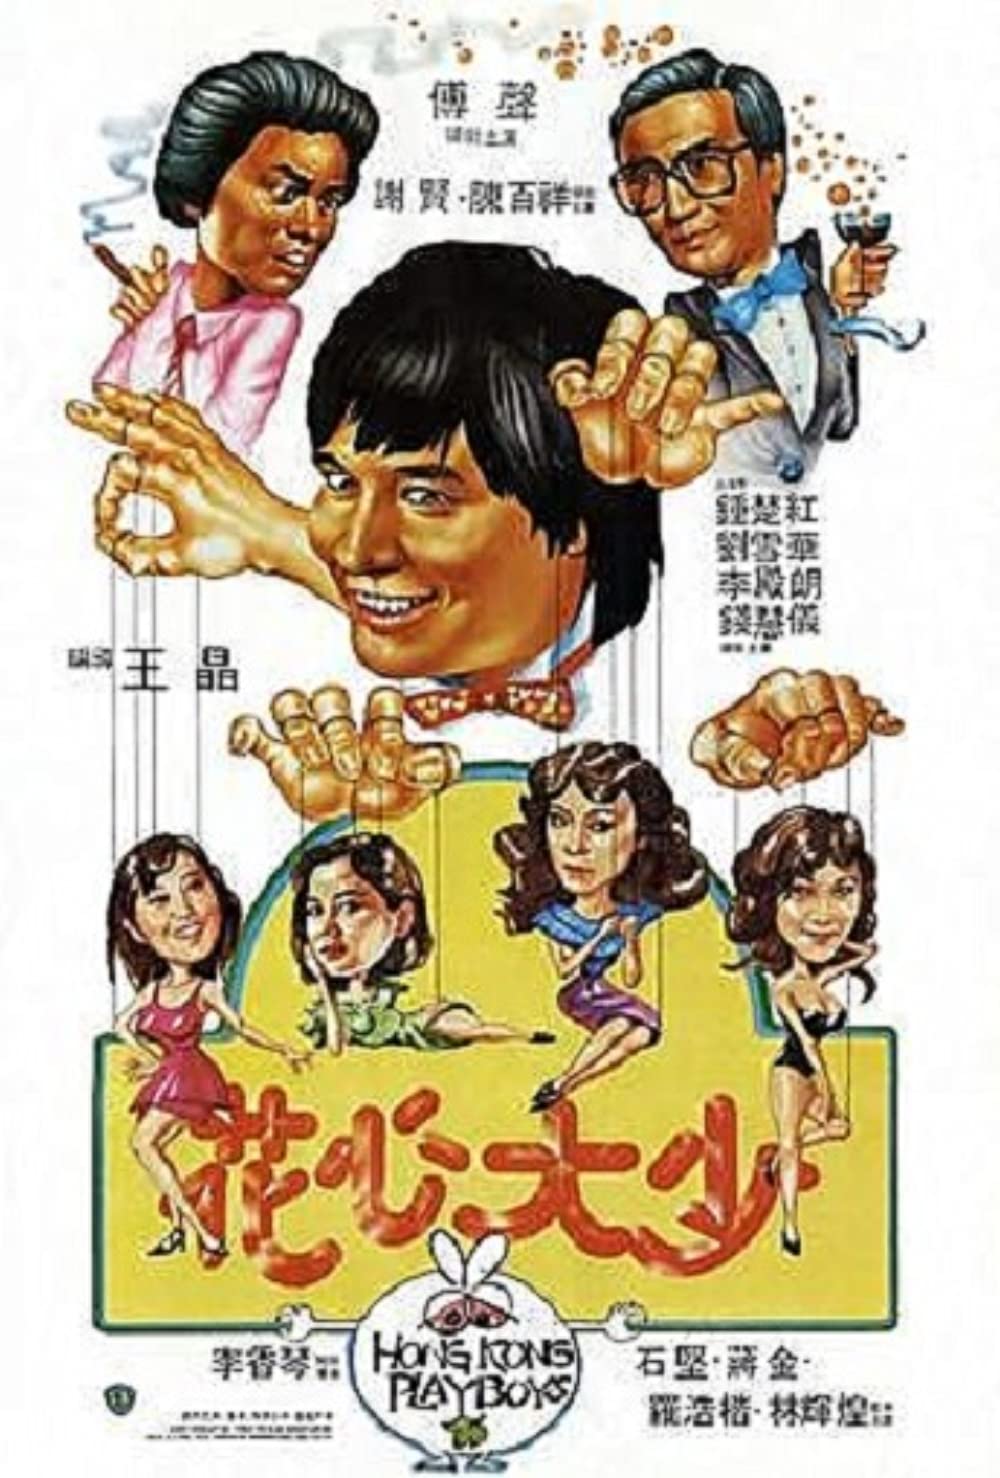 ดูหนังออนไลน์ฟรี Hong Kong Playboys (1983) ยอดรักพ่อปลาไหล หนังเต็มเรื่อง หนังมาสเตอร์ ดูหนังHD ดูหนังออนไลน์ ดูหนังใหม่